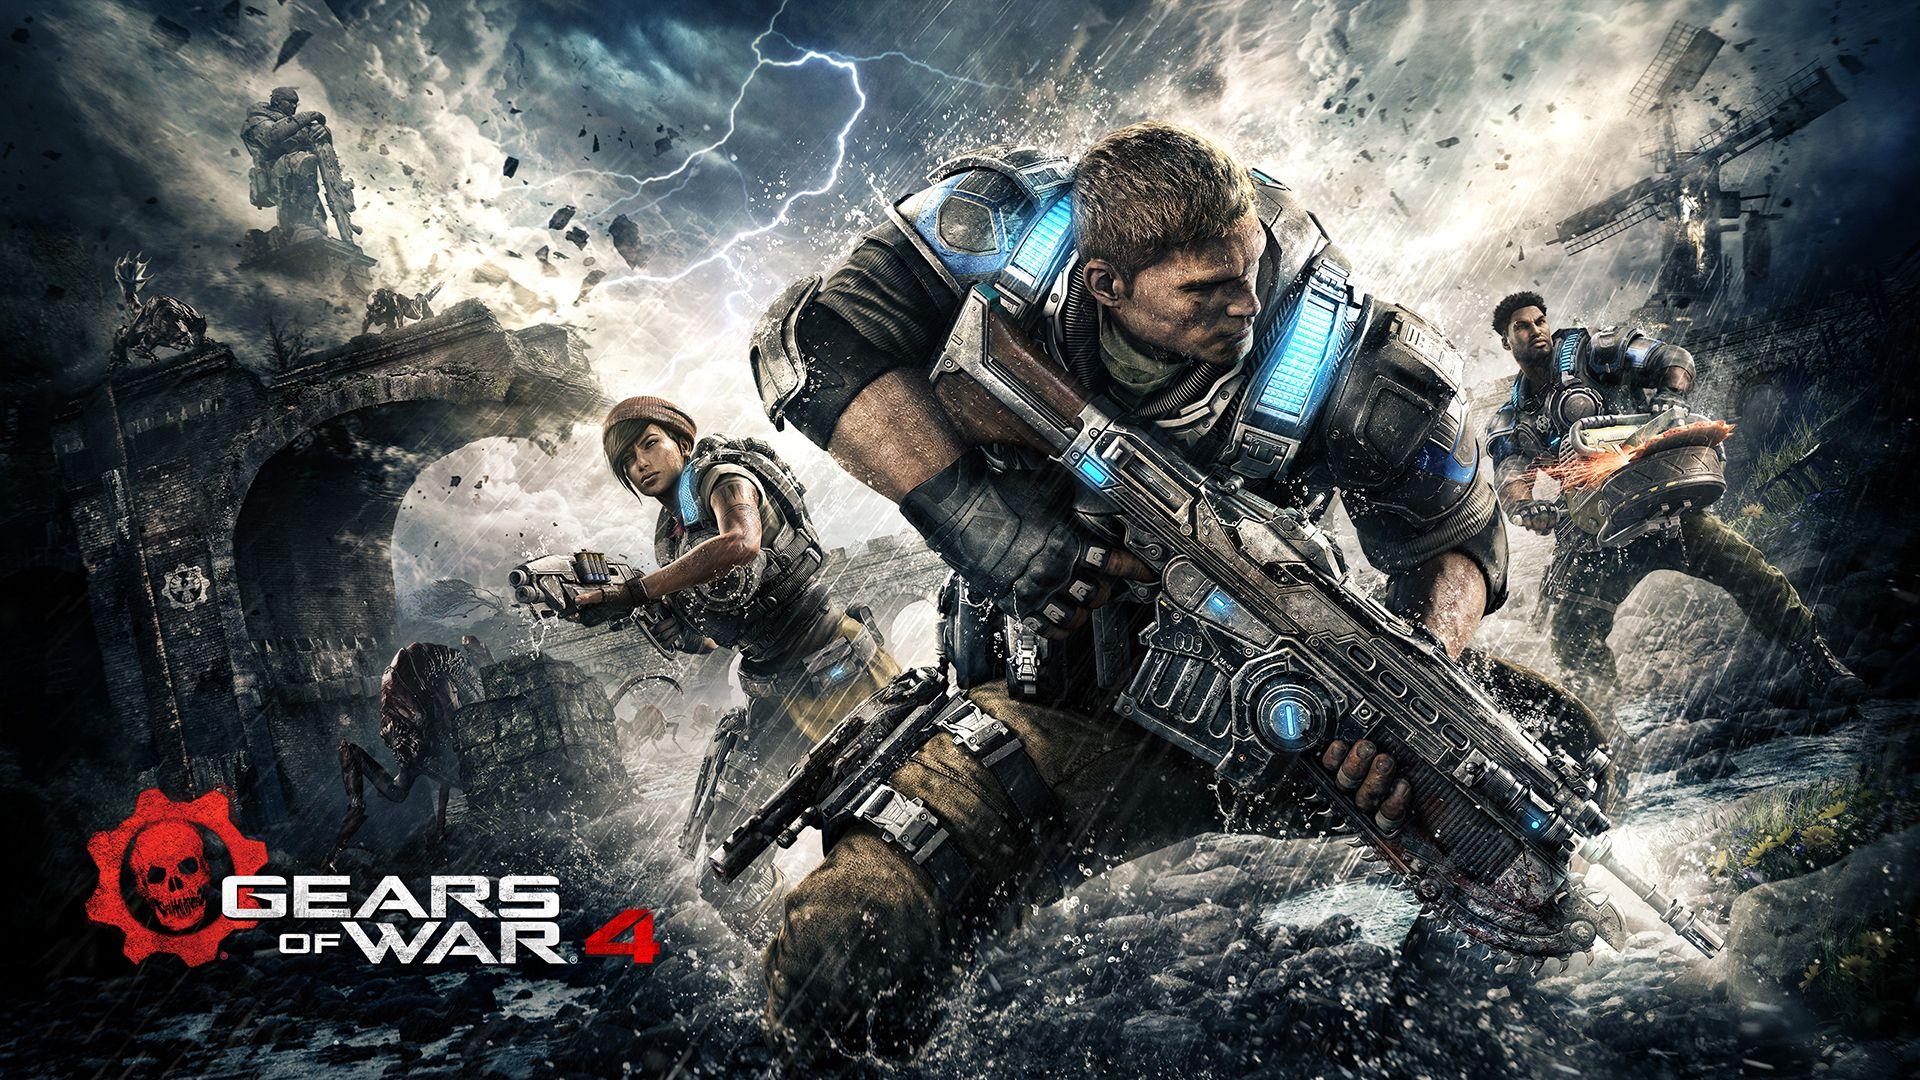 Gears of War 4 Wallpaper. Gears of War Site. Games